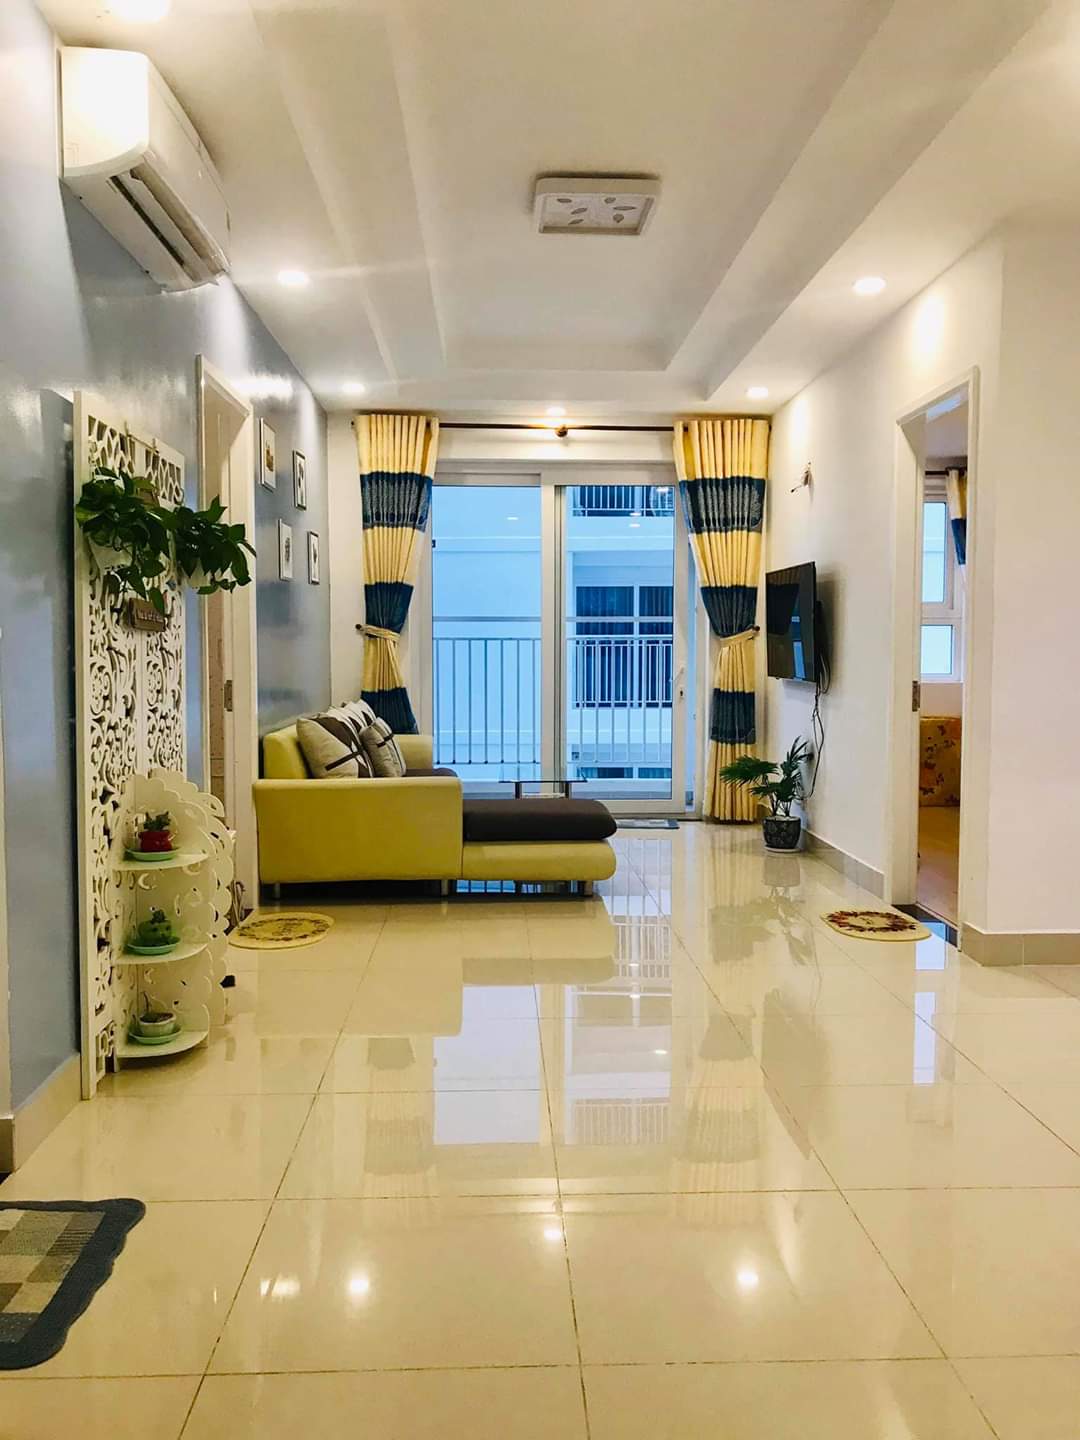 Bán nhà HXH 8m đường Trần Hưng Đạo phường Cầu Kho quận 1, trệt 5L, giá 7.5 tỷ